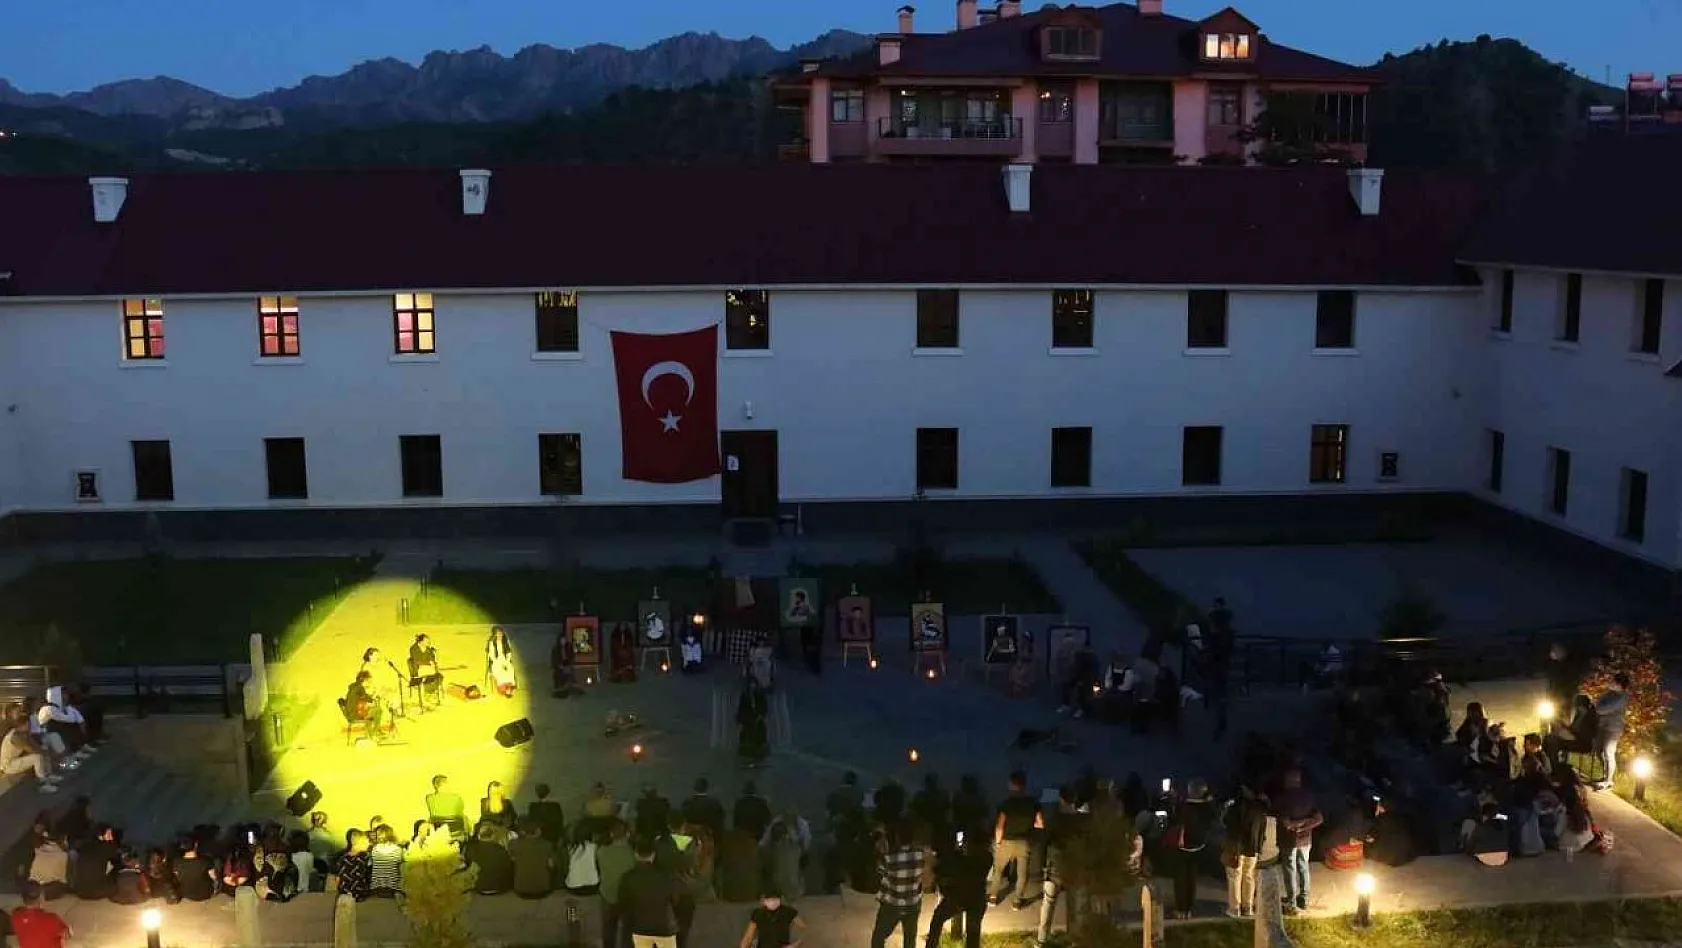 Tunceli'de askeri kışla modern müzeye dönüştürüldü, 40 bin kişi ziyaret etti